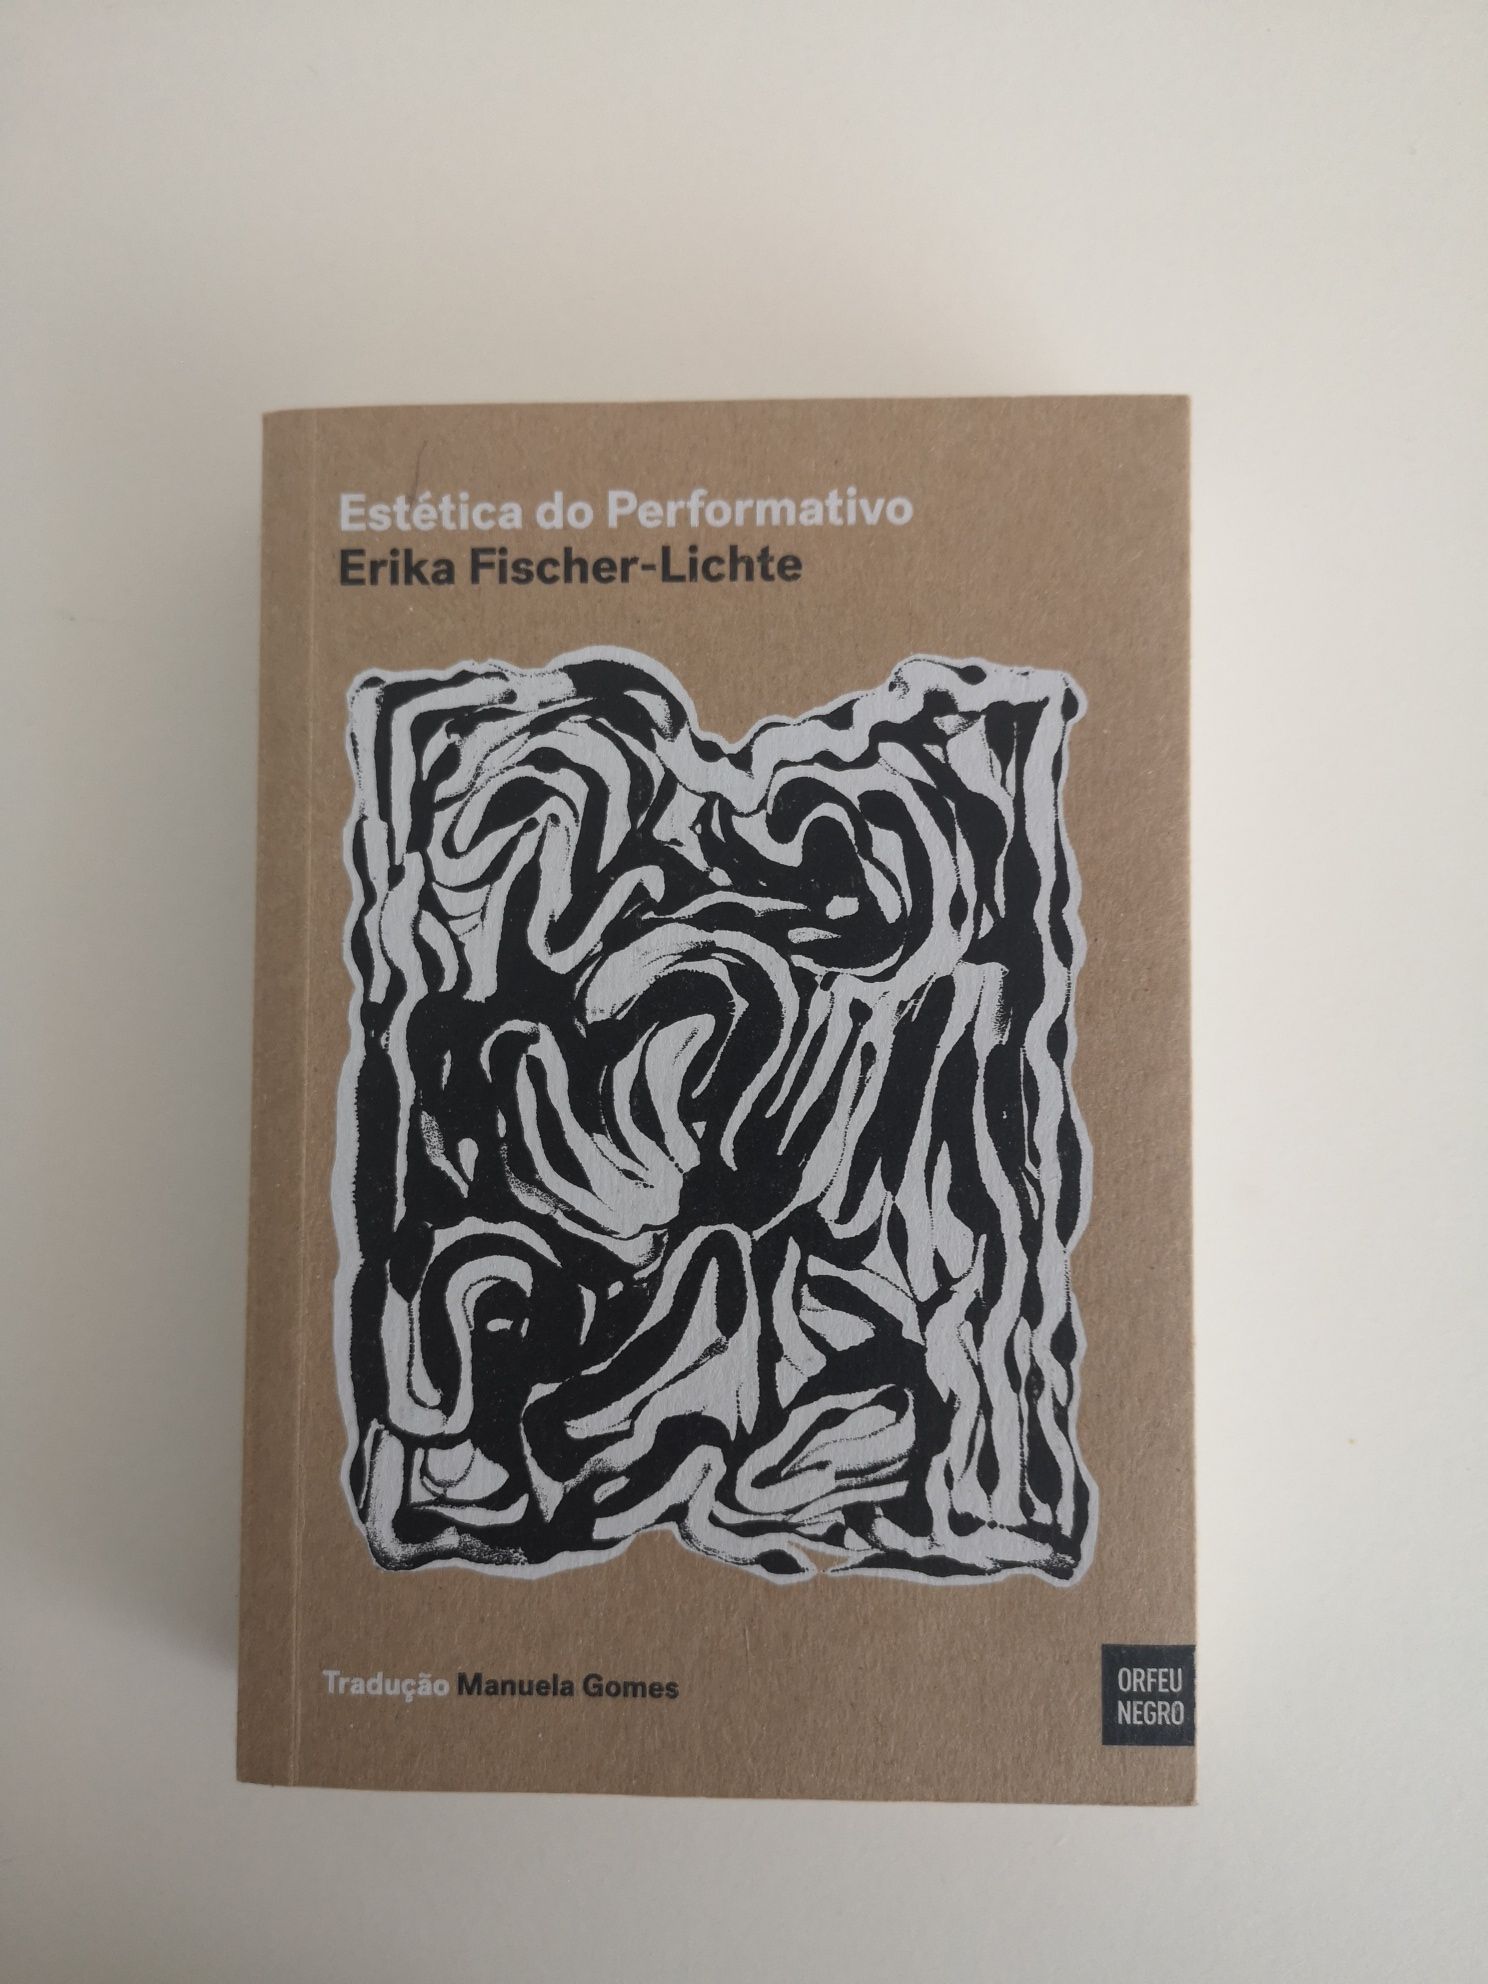 Estética do Performativo - Erika Fischer-Lichte 
ERIKA FISCHER-LICHTE